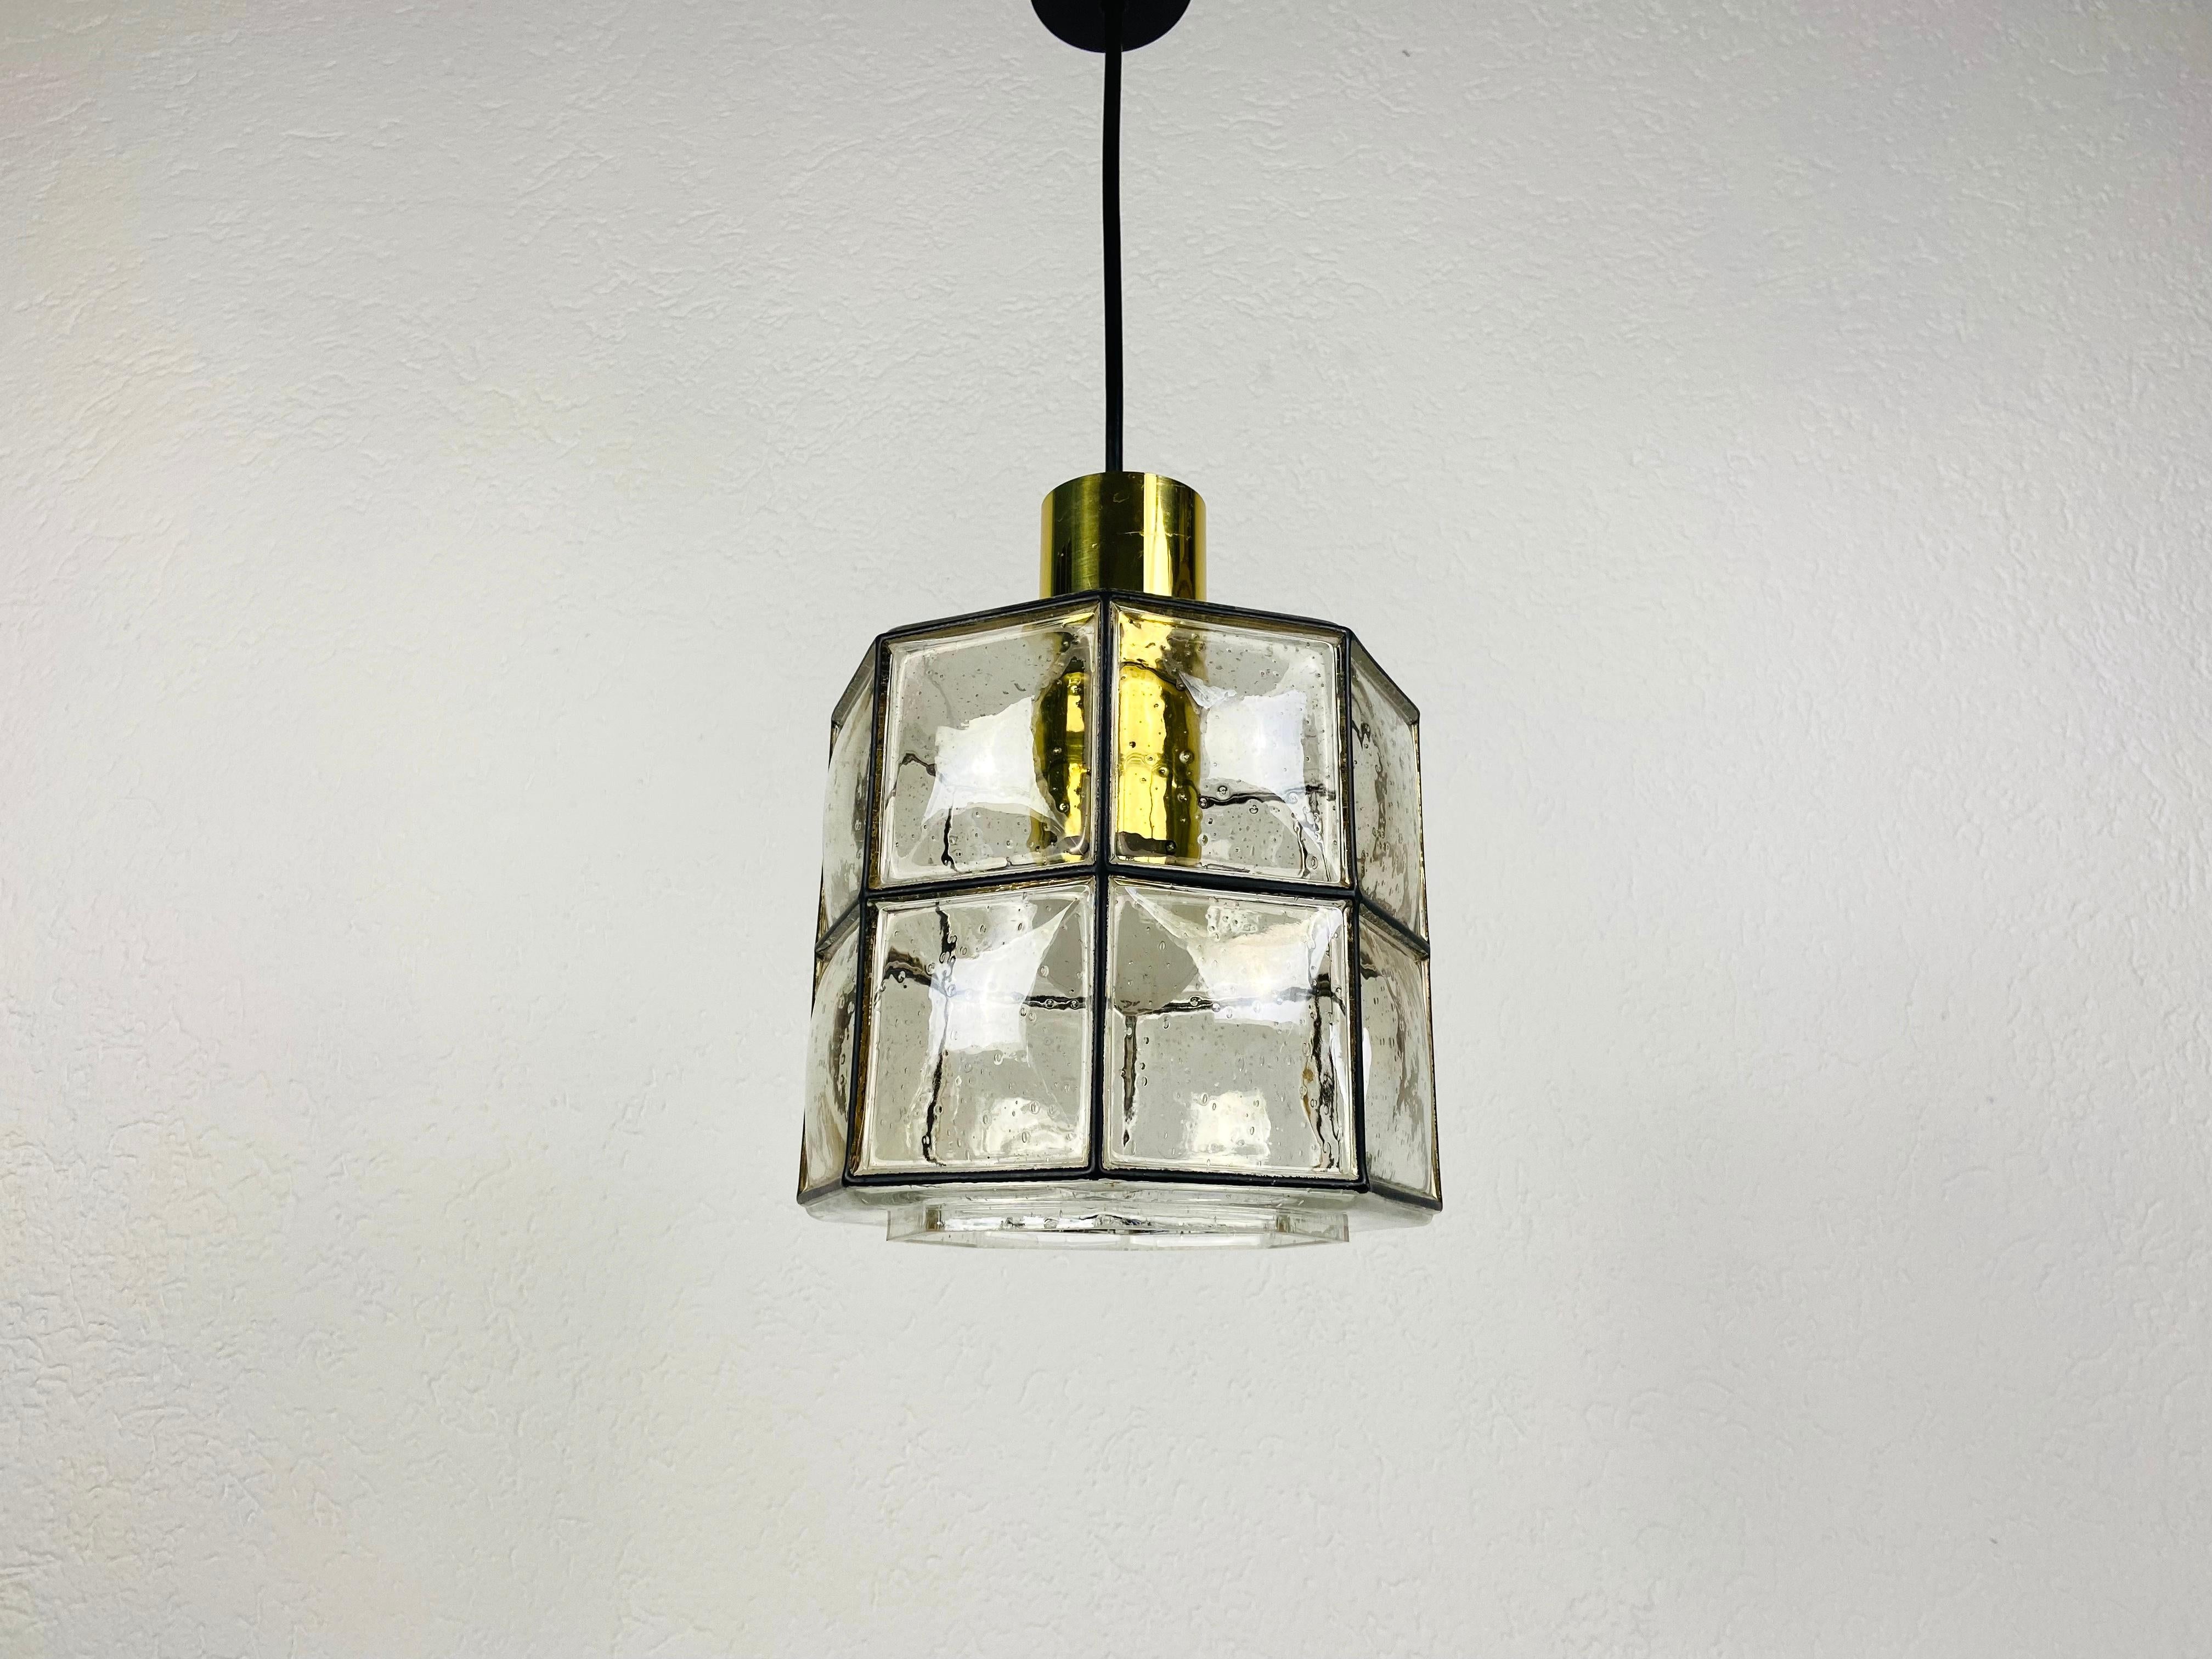 Une lampe suspendue de style moderne du milieu du siècle par Glashütte Limburg, fabriquée dans les années 1960 en Allemagne. Il est fascinant avec sa belle forme et son verre à bulles. Le luminaire a un très beau design minimaliste.

La lampe